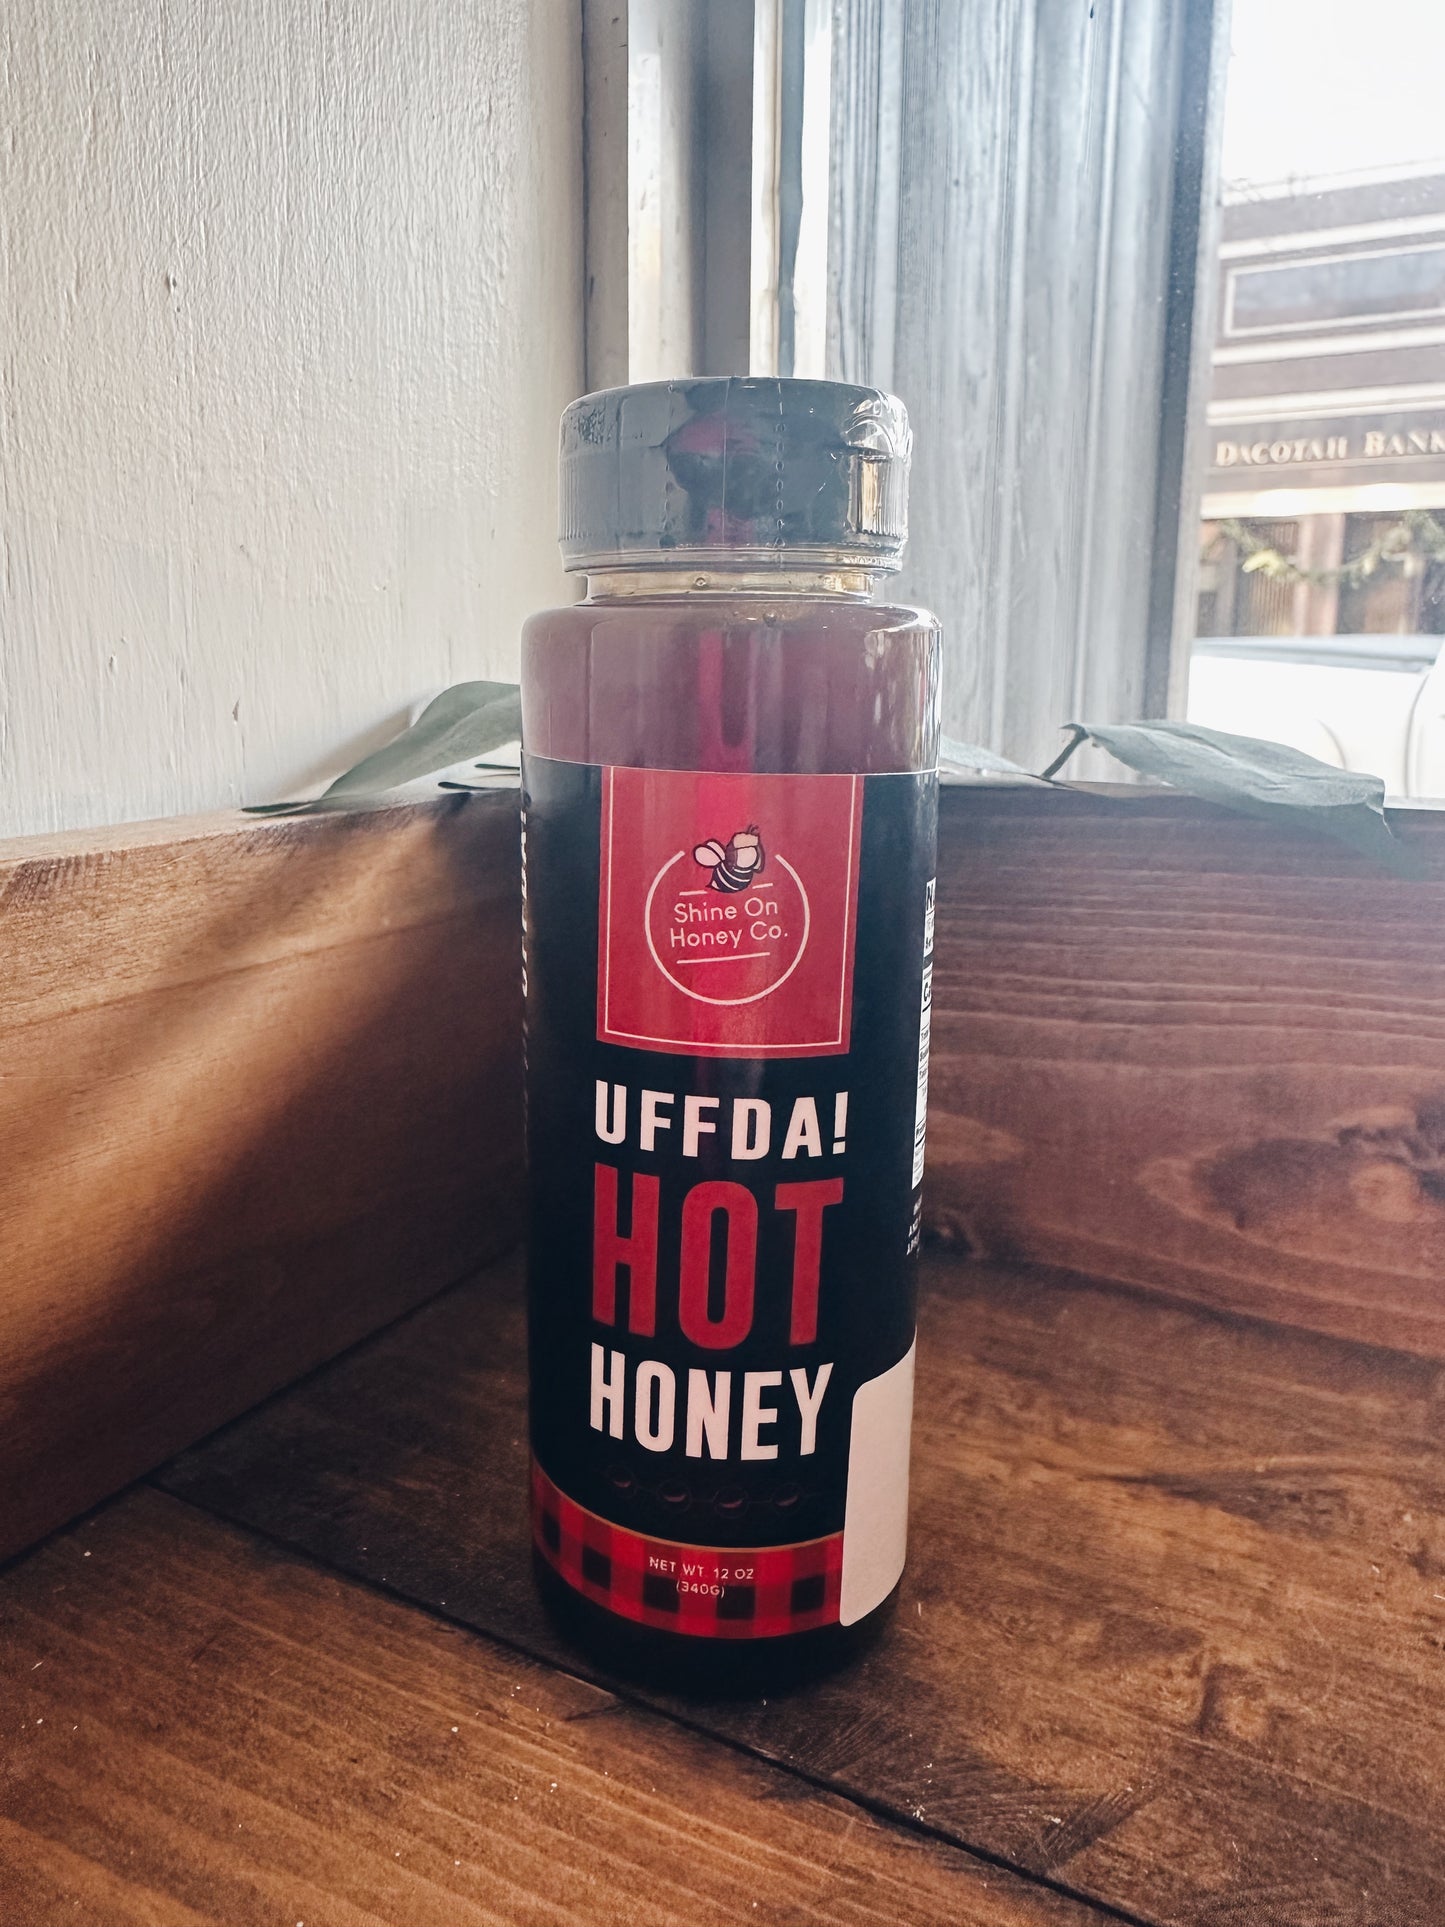 Uffda! Hot Honey